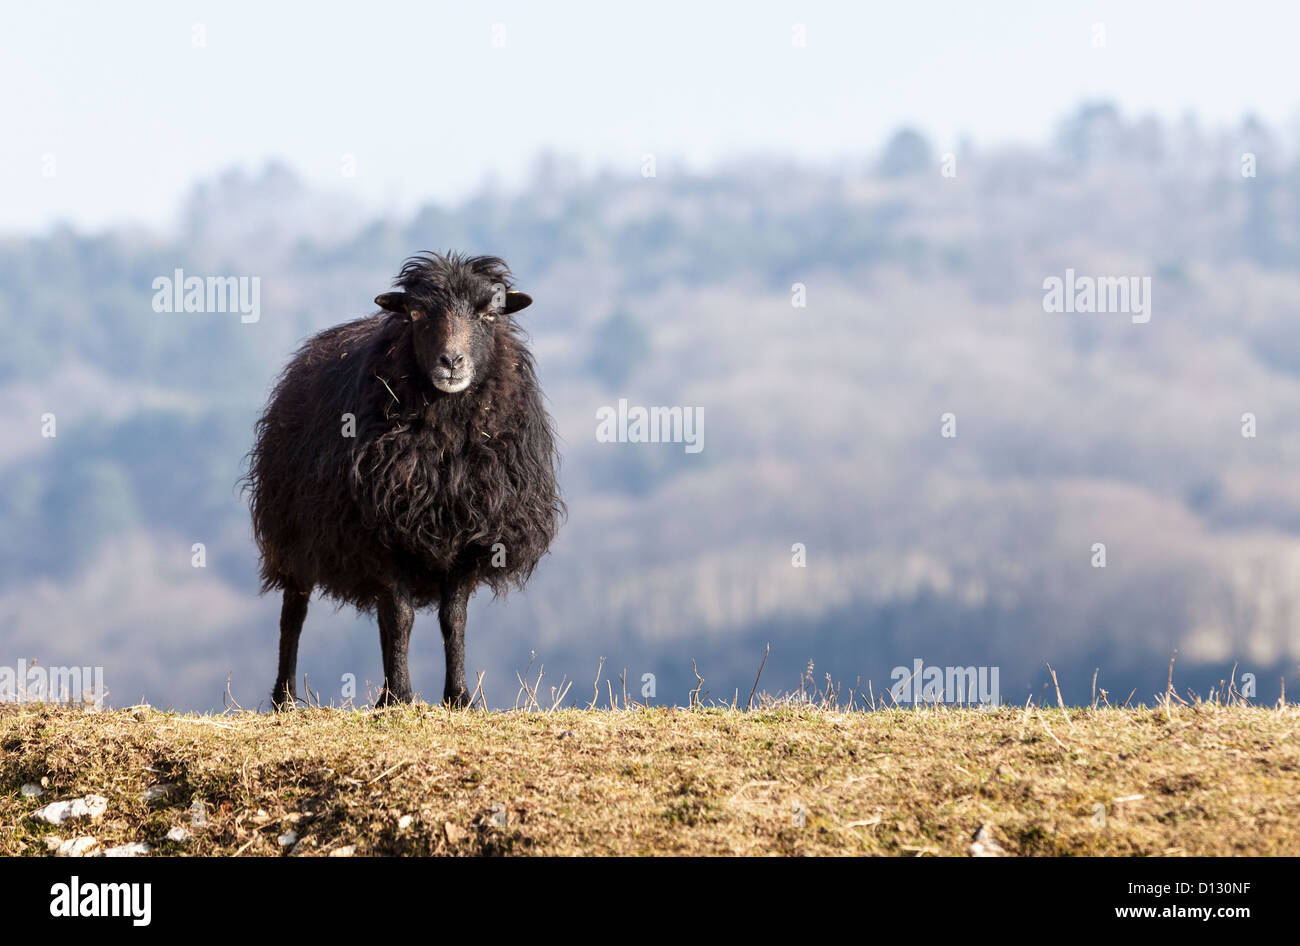 Portrait d'un mouton domestique noir Ouessant,qui est la plus petite des moutons dans le monde, adaptées pour vivre dans des zones venteuses. Banque D'Images